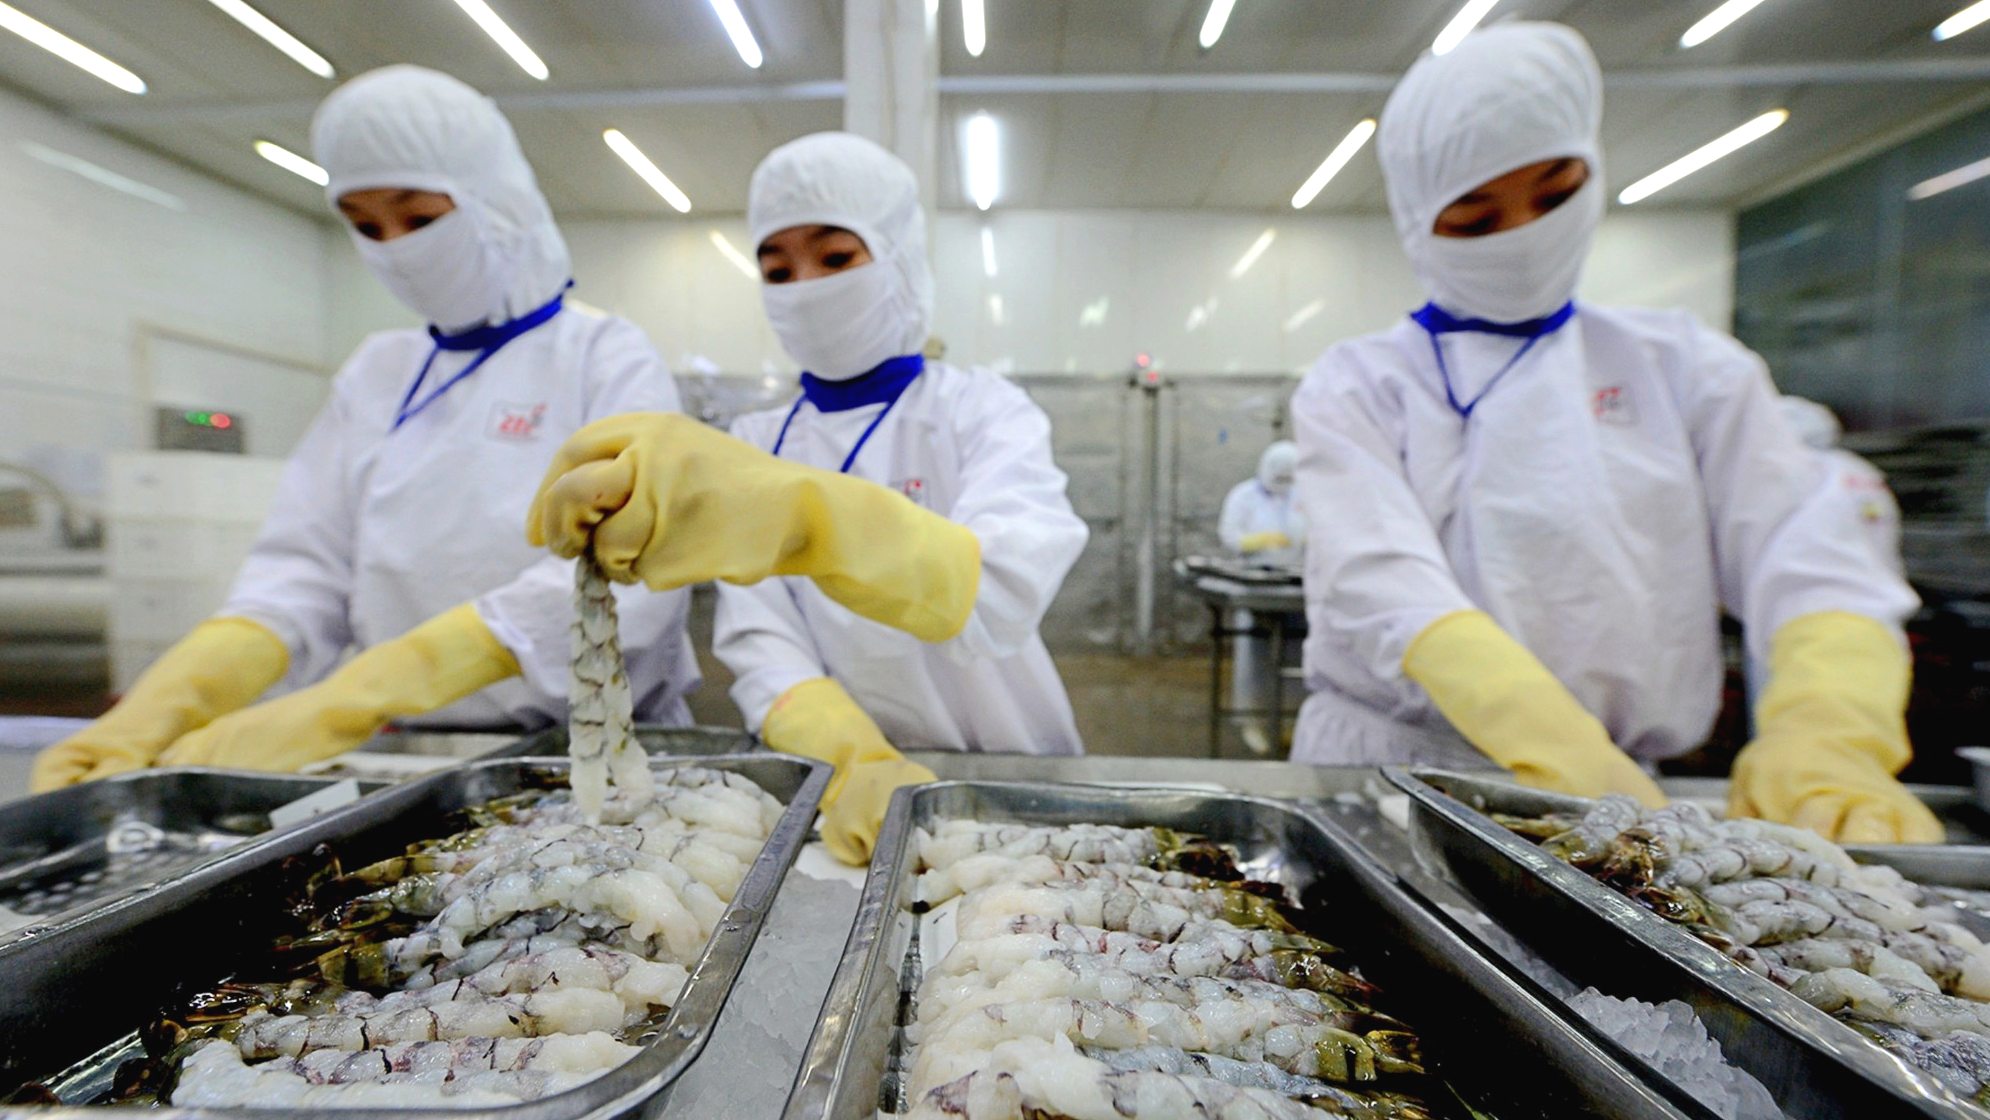 Trung Quốc, Mỹ mua thủy sản nhiều nhất từ Việt Nam, dự báo xuất khẩu có thể đạt 9 tỷ USD - Ảnh 1.